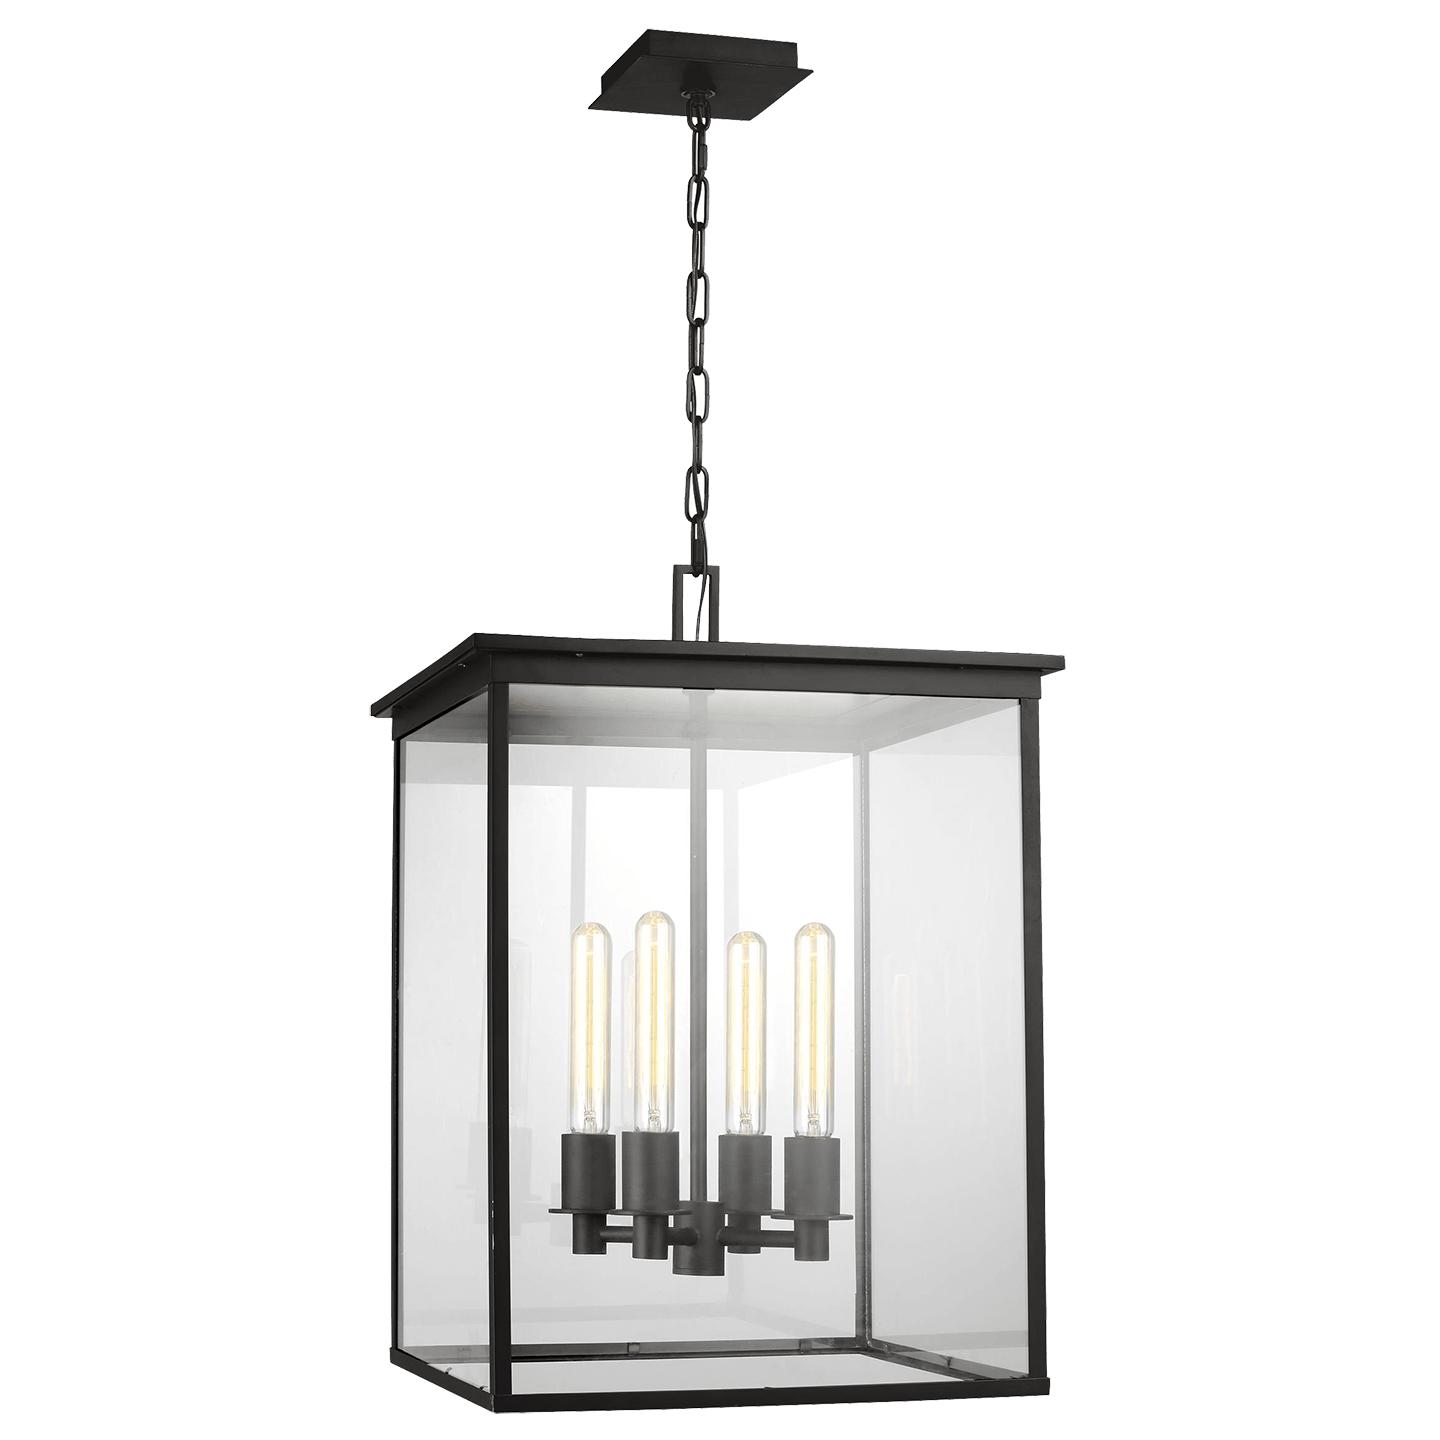 Купить Подвесной светильник Freeport Medium Outdoor Hanging Lantern в интернет-магазине roooms.ru